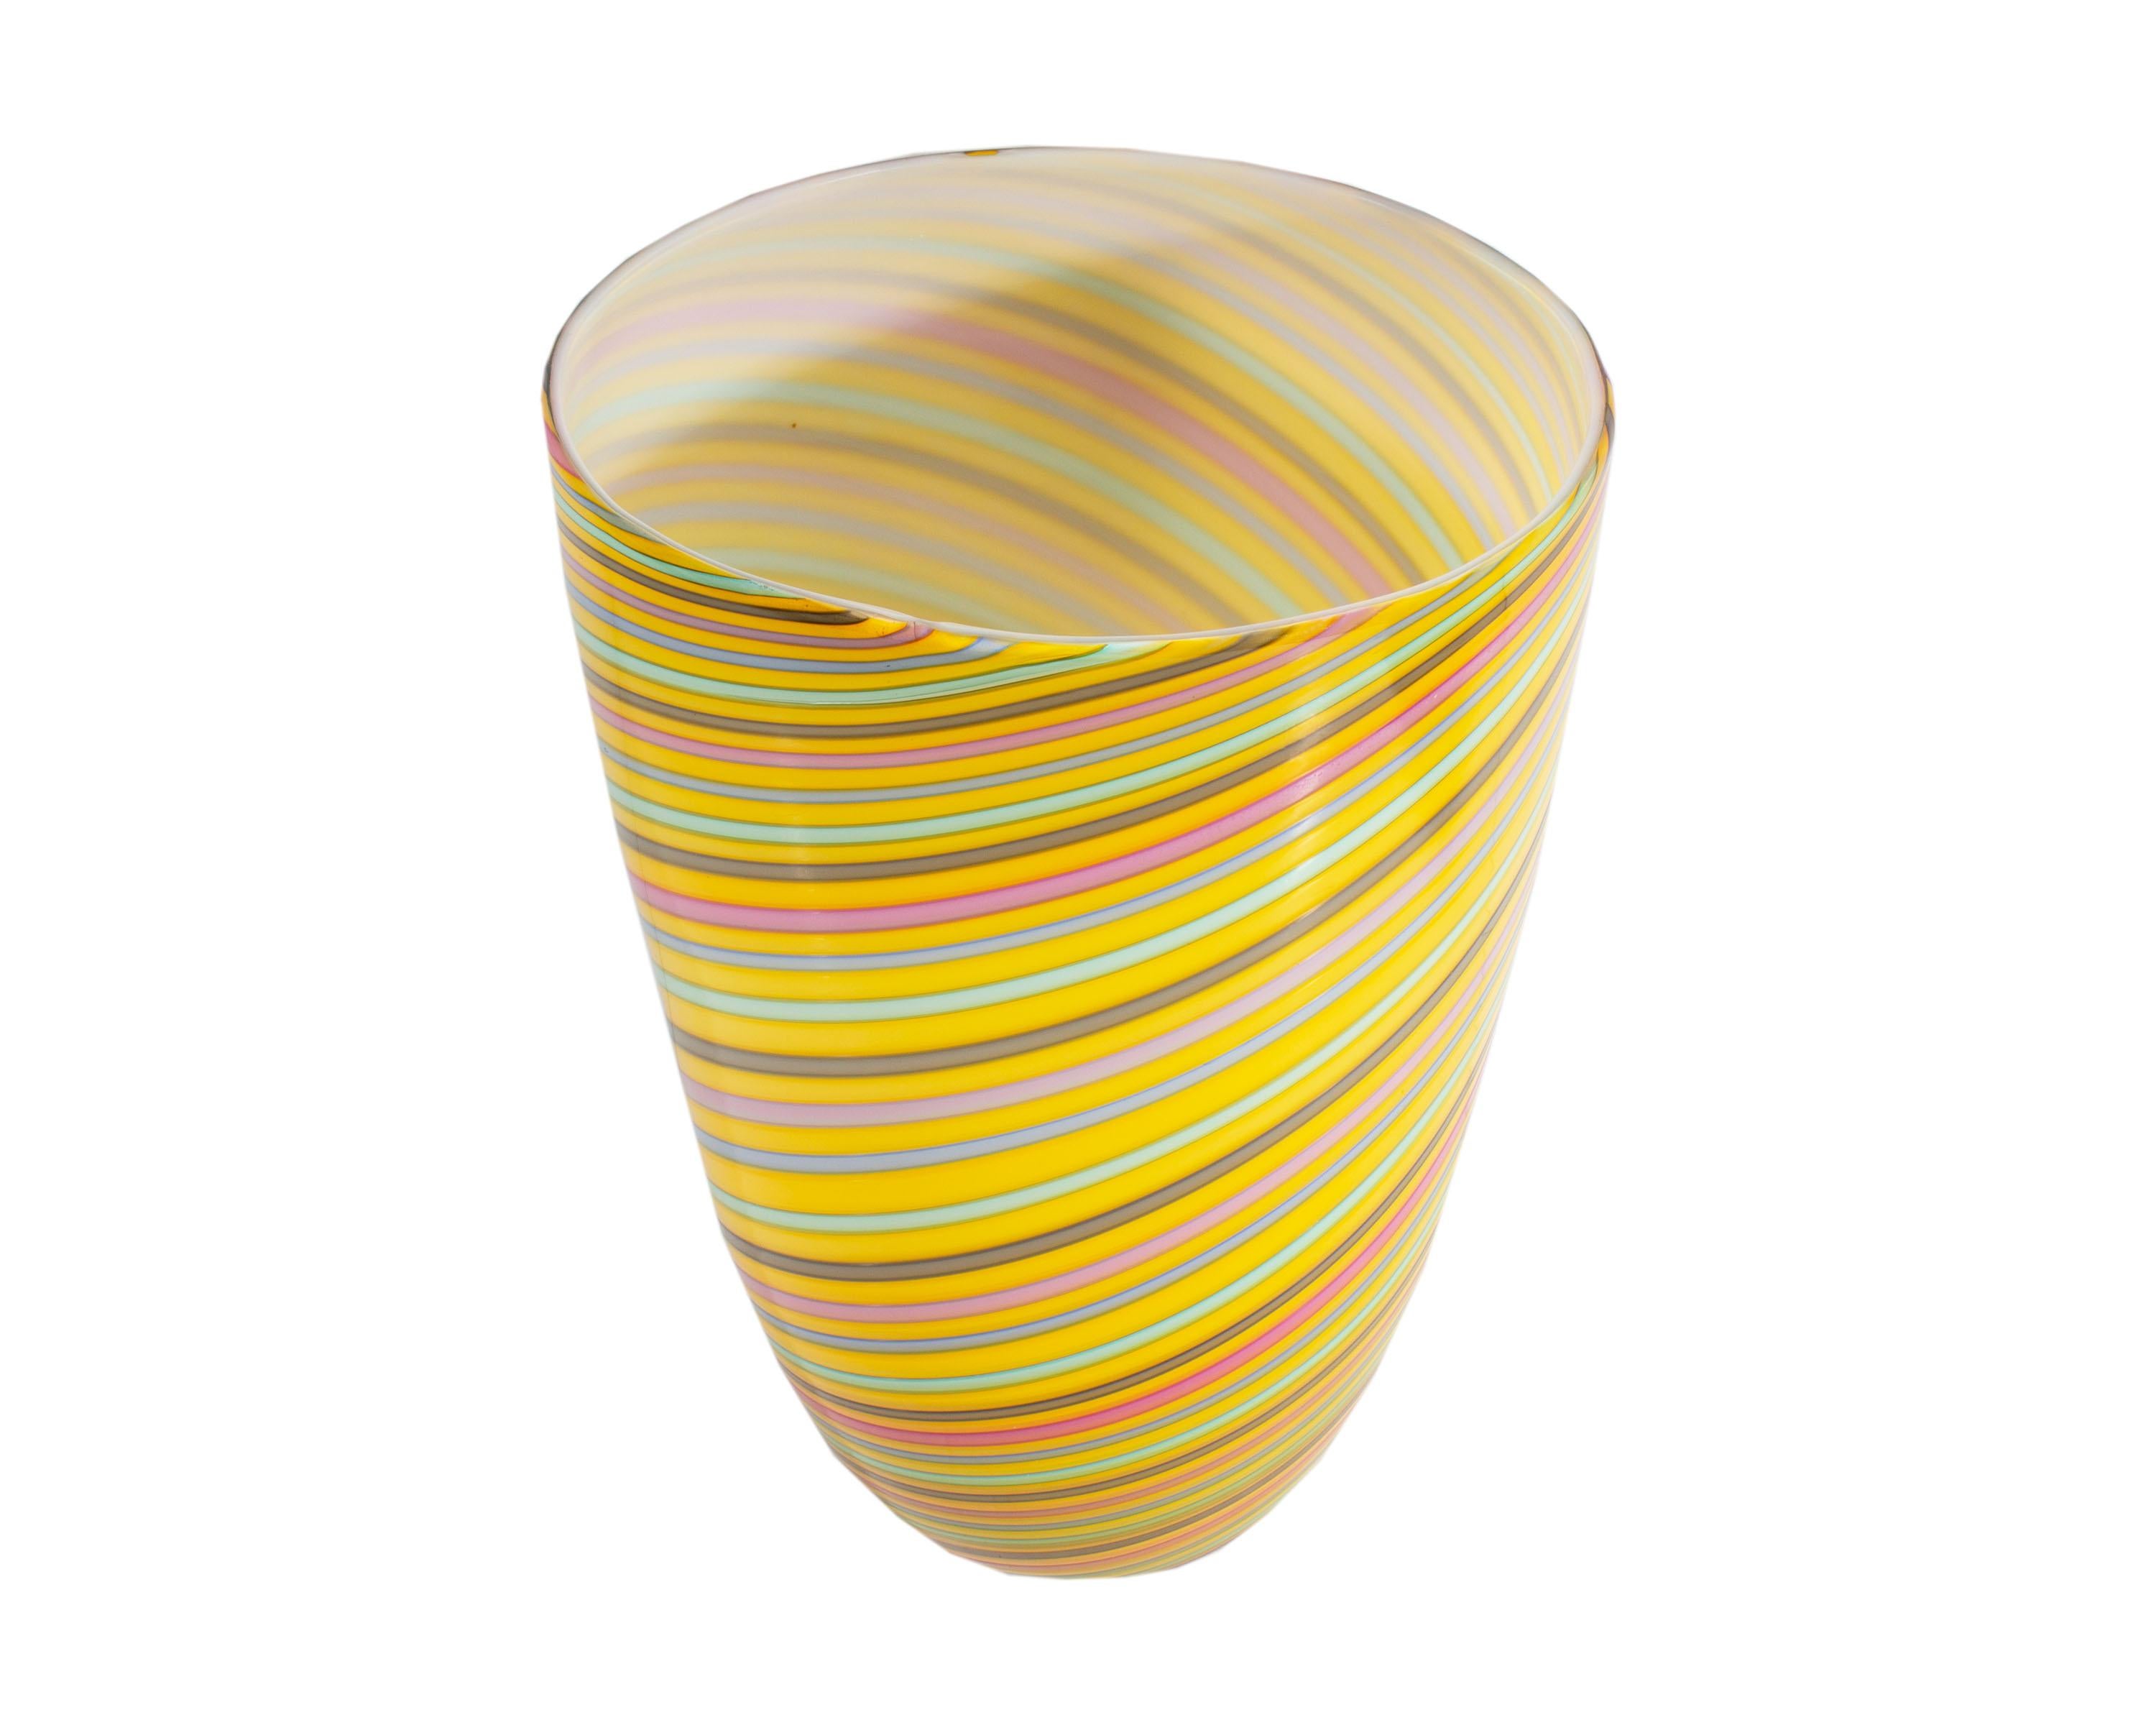 Un vase d'art vintage en verre de Murano par Cenedese. Fabriqué en Italie, ce vase ovale effilé présente des bandes de couleur alternées sur fond jaune. Des motifs uniformes de bleu, vert et rose forment une spirale sur le vase à boîtier jaune et